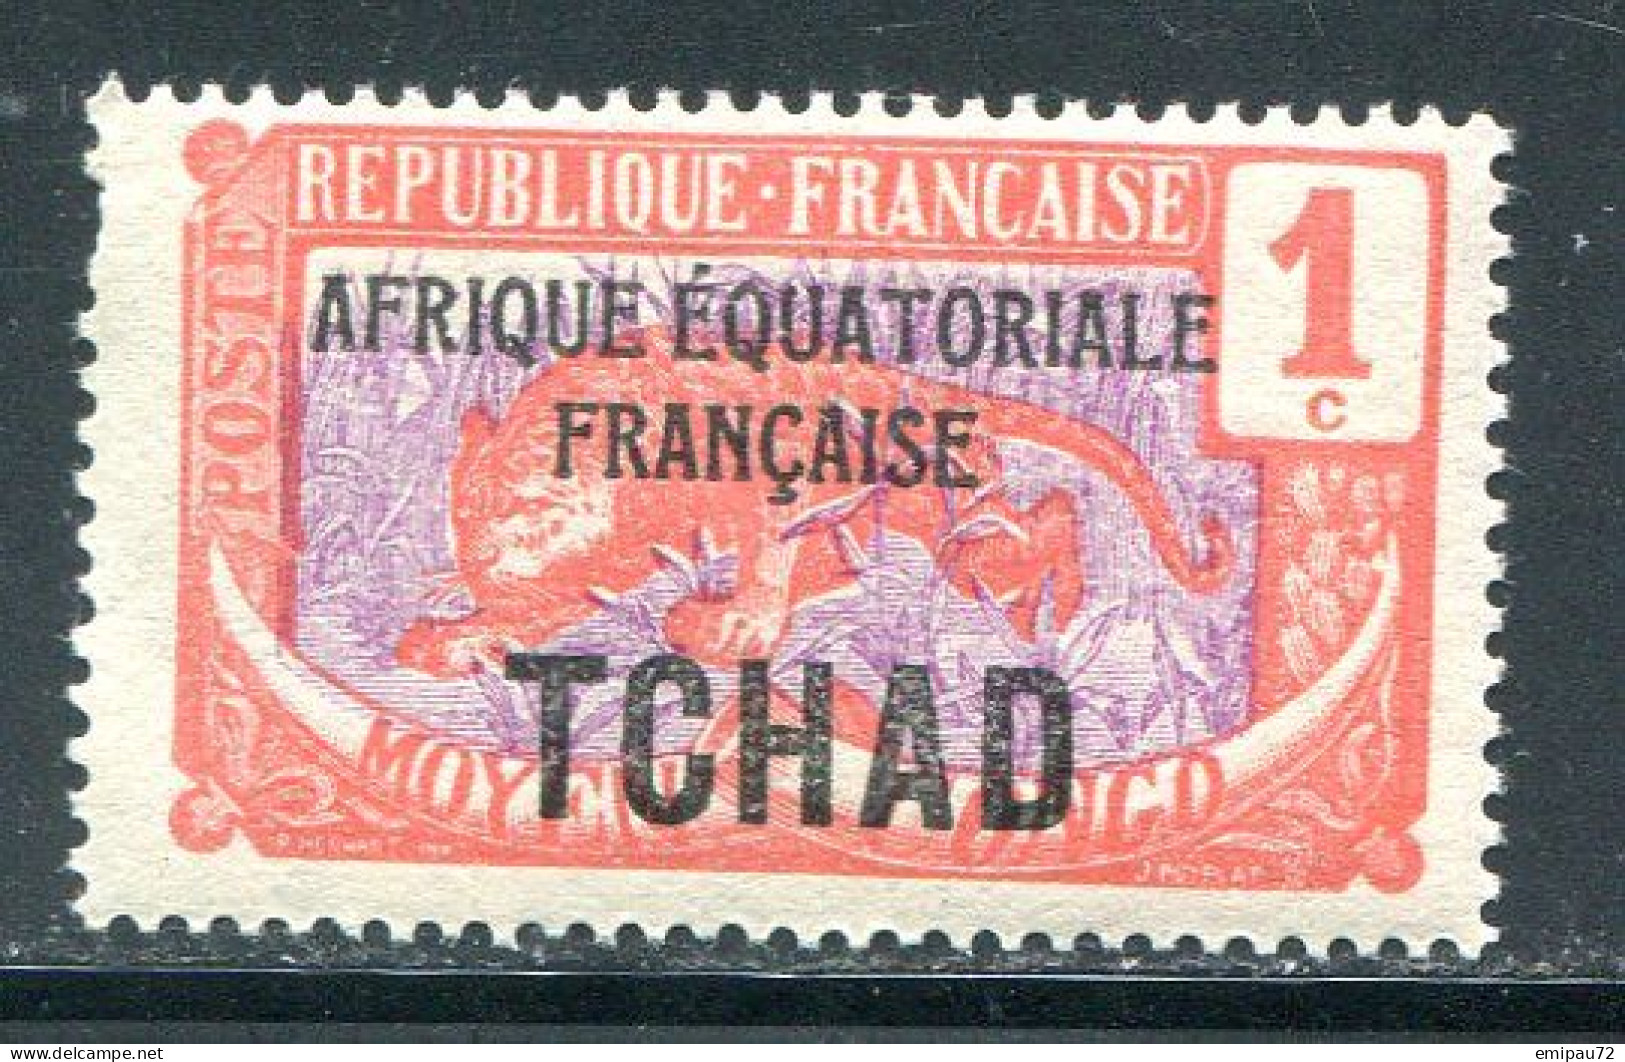 TCHAD- Y&T N°19- Neuf Sans Charnière ** - Nuovi